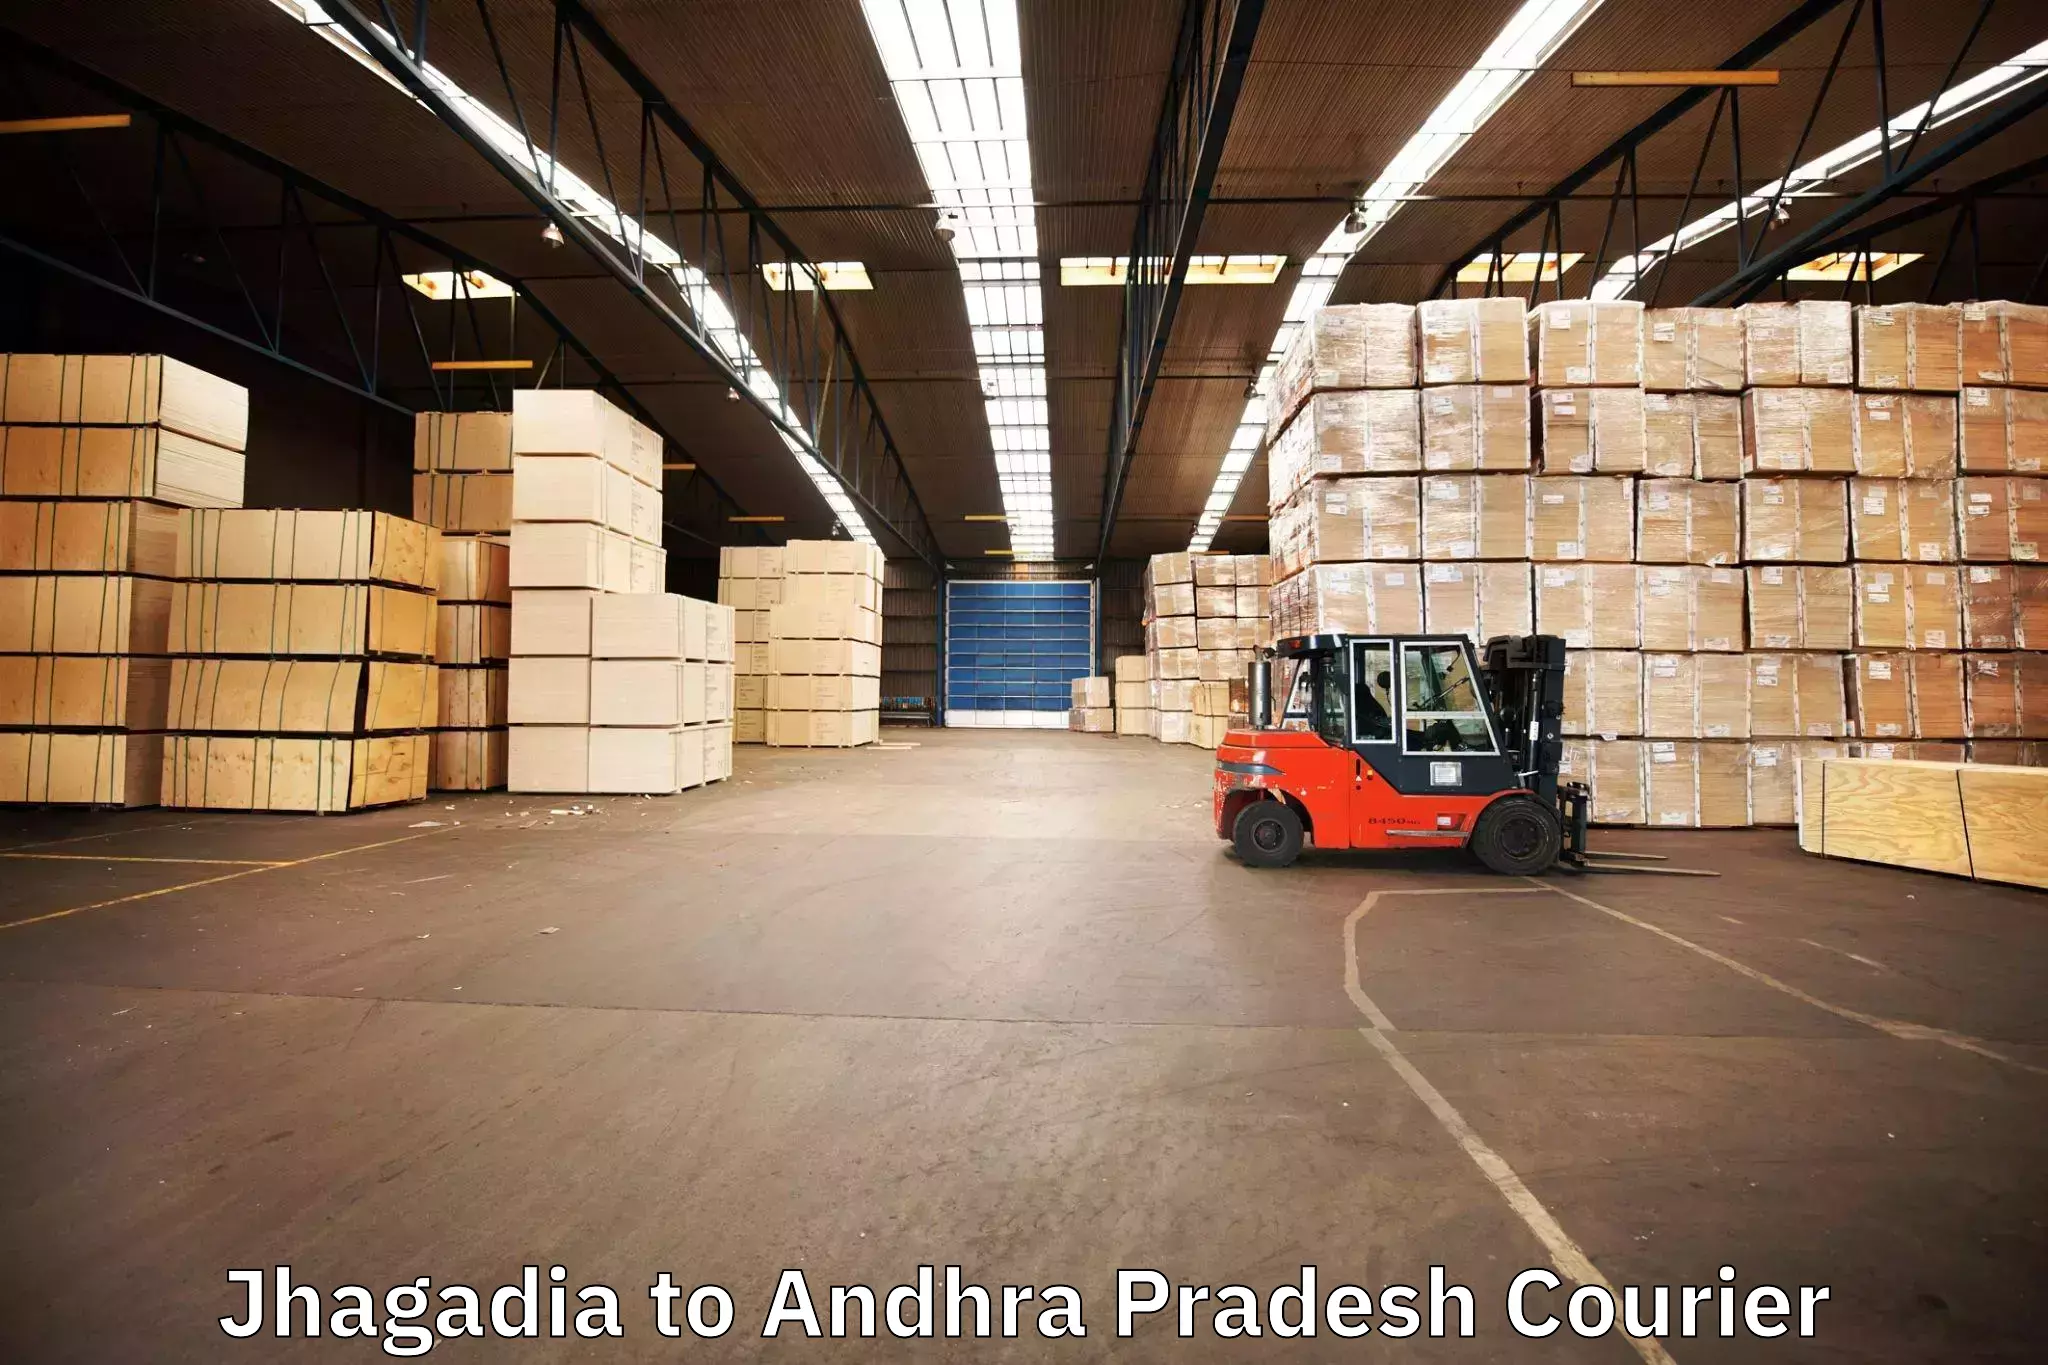 Trusted moving company Jhagadia to Kadapa